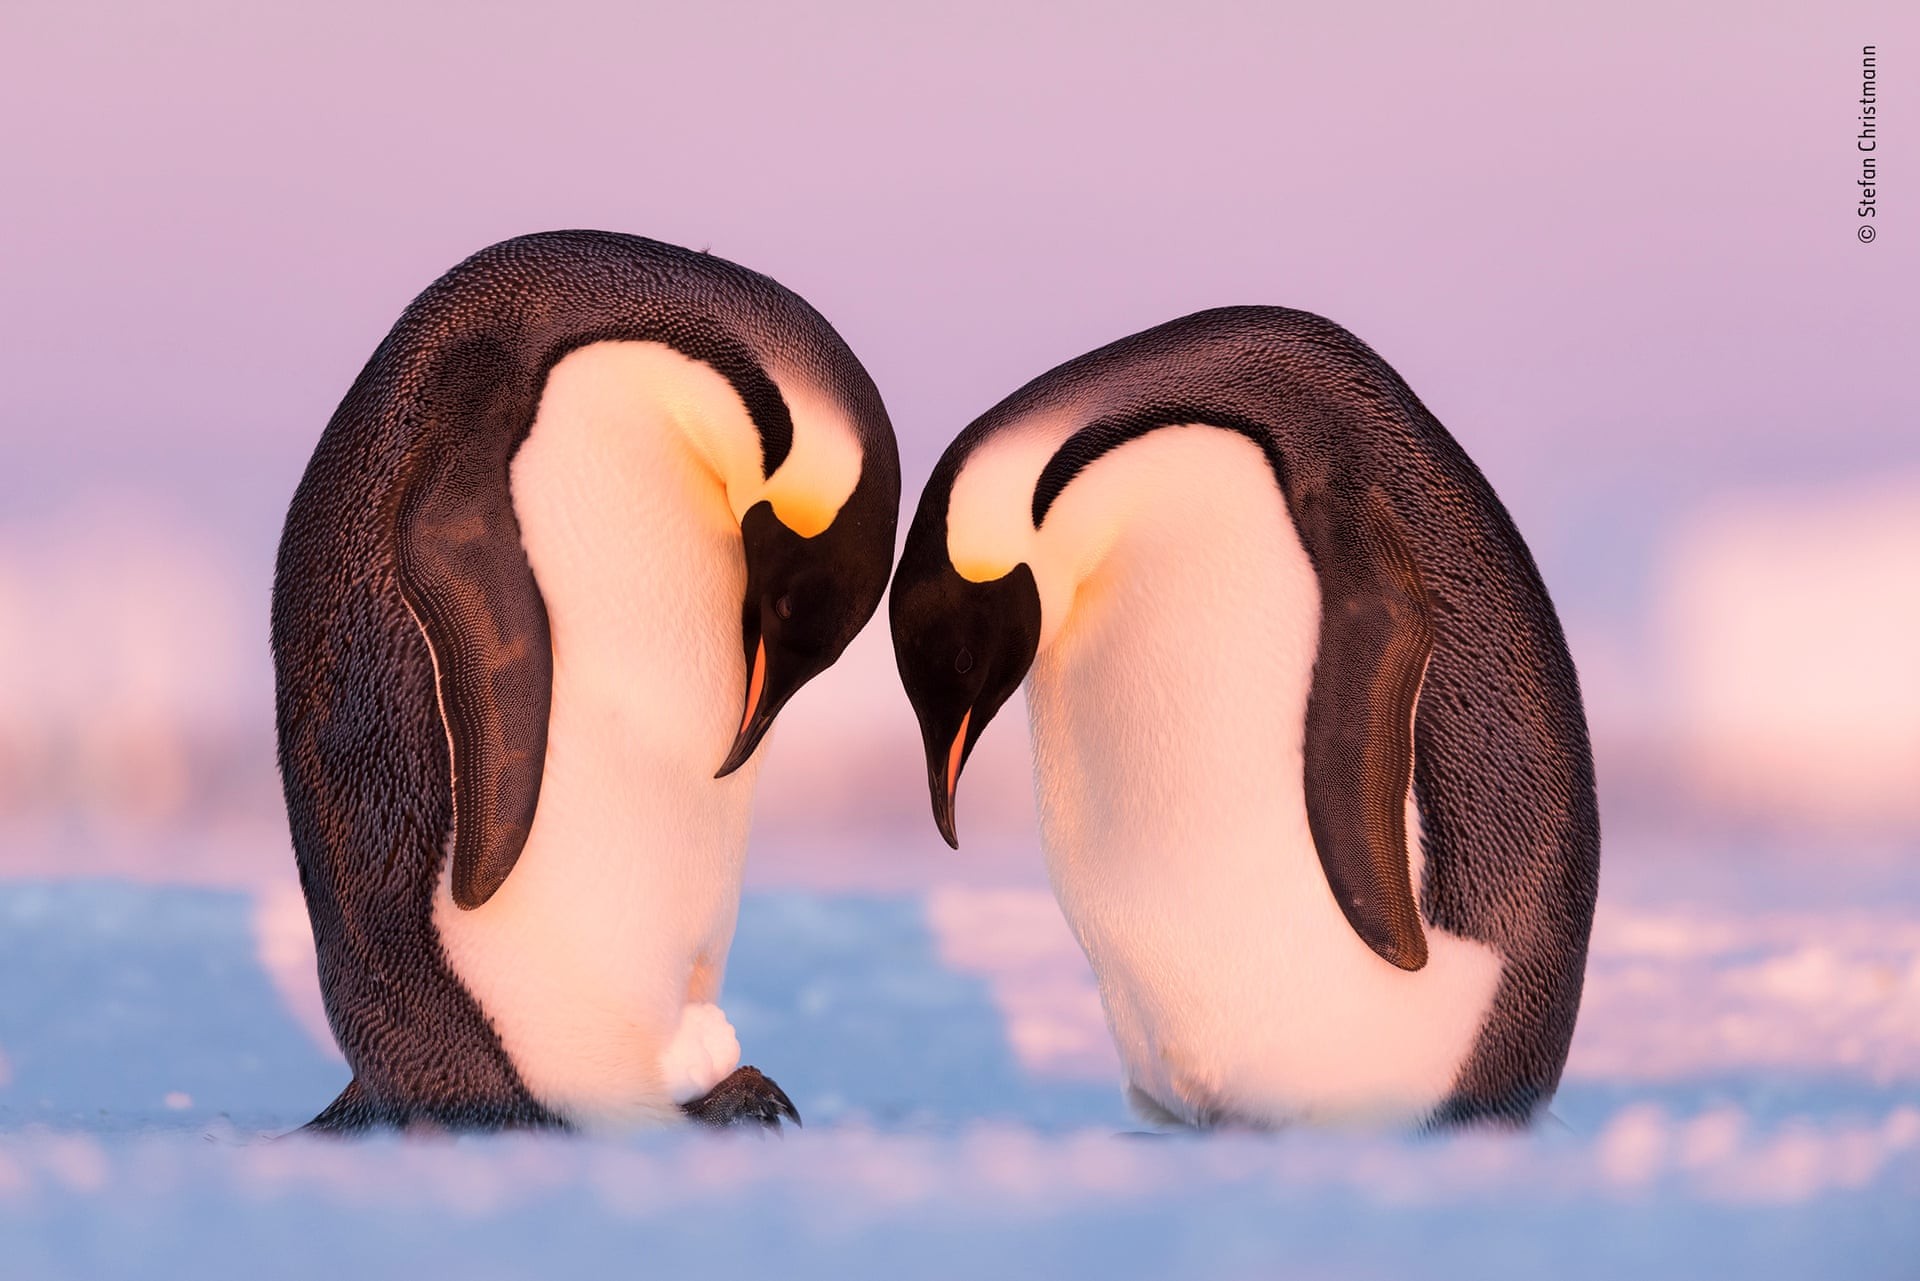 Финалист 2019. Пингвины тренируются в переносе яиц, используя снежок. Автор Штефан Христманн